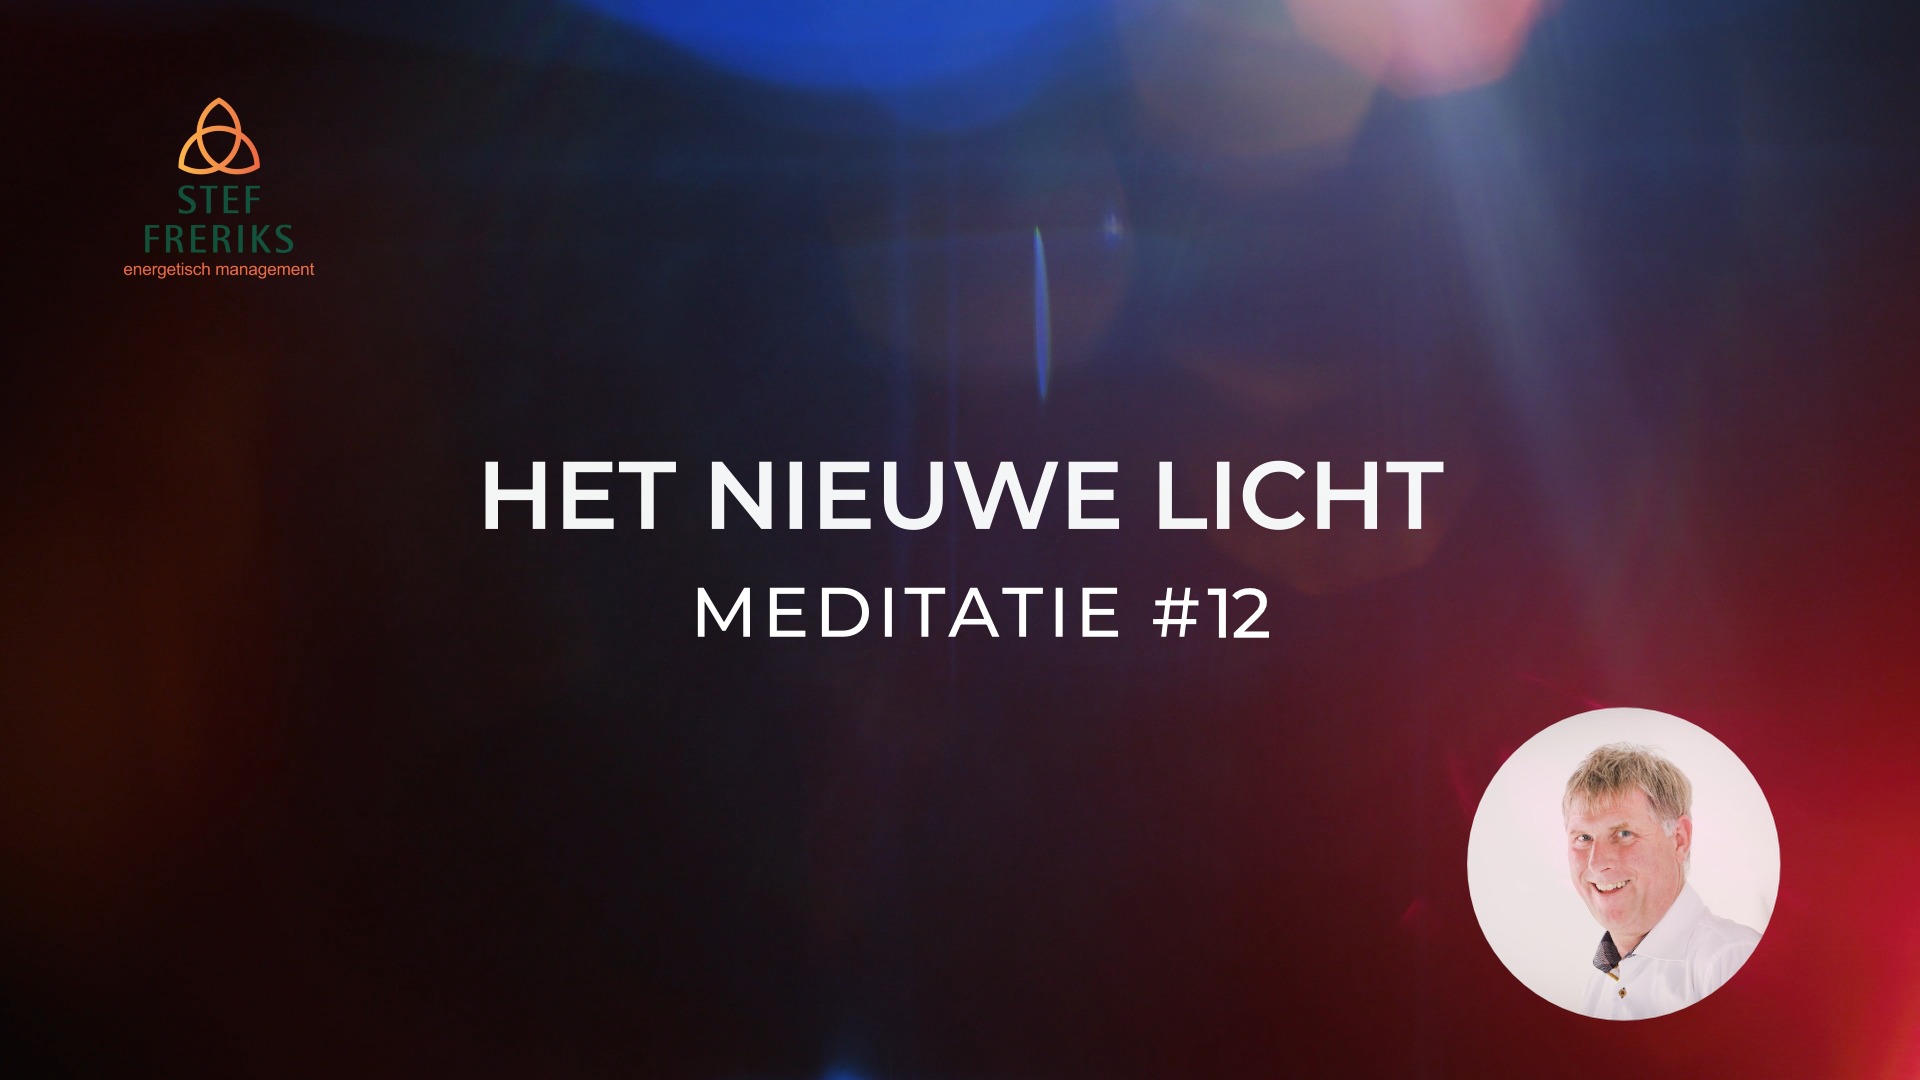 Meditatie #4 uit de serie Het Nieuwe Licht: Herkennen van onze aanwezigheid